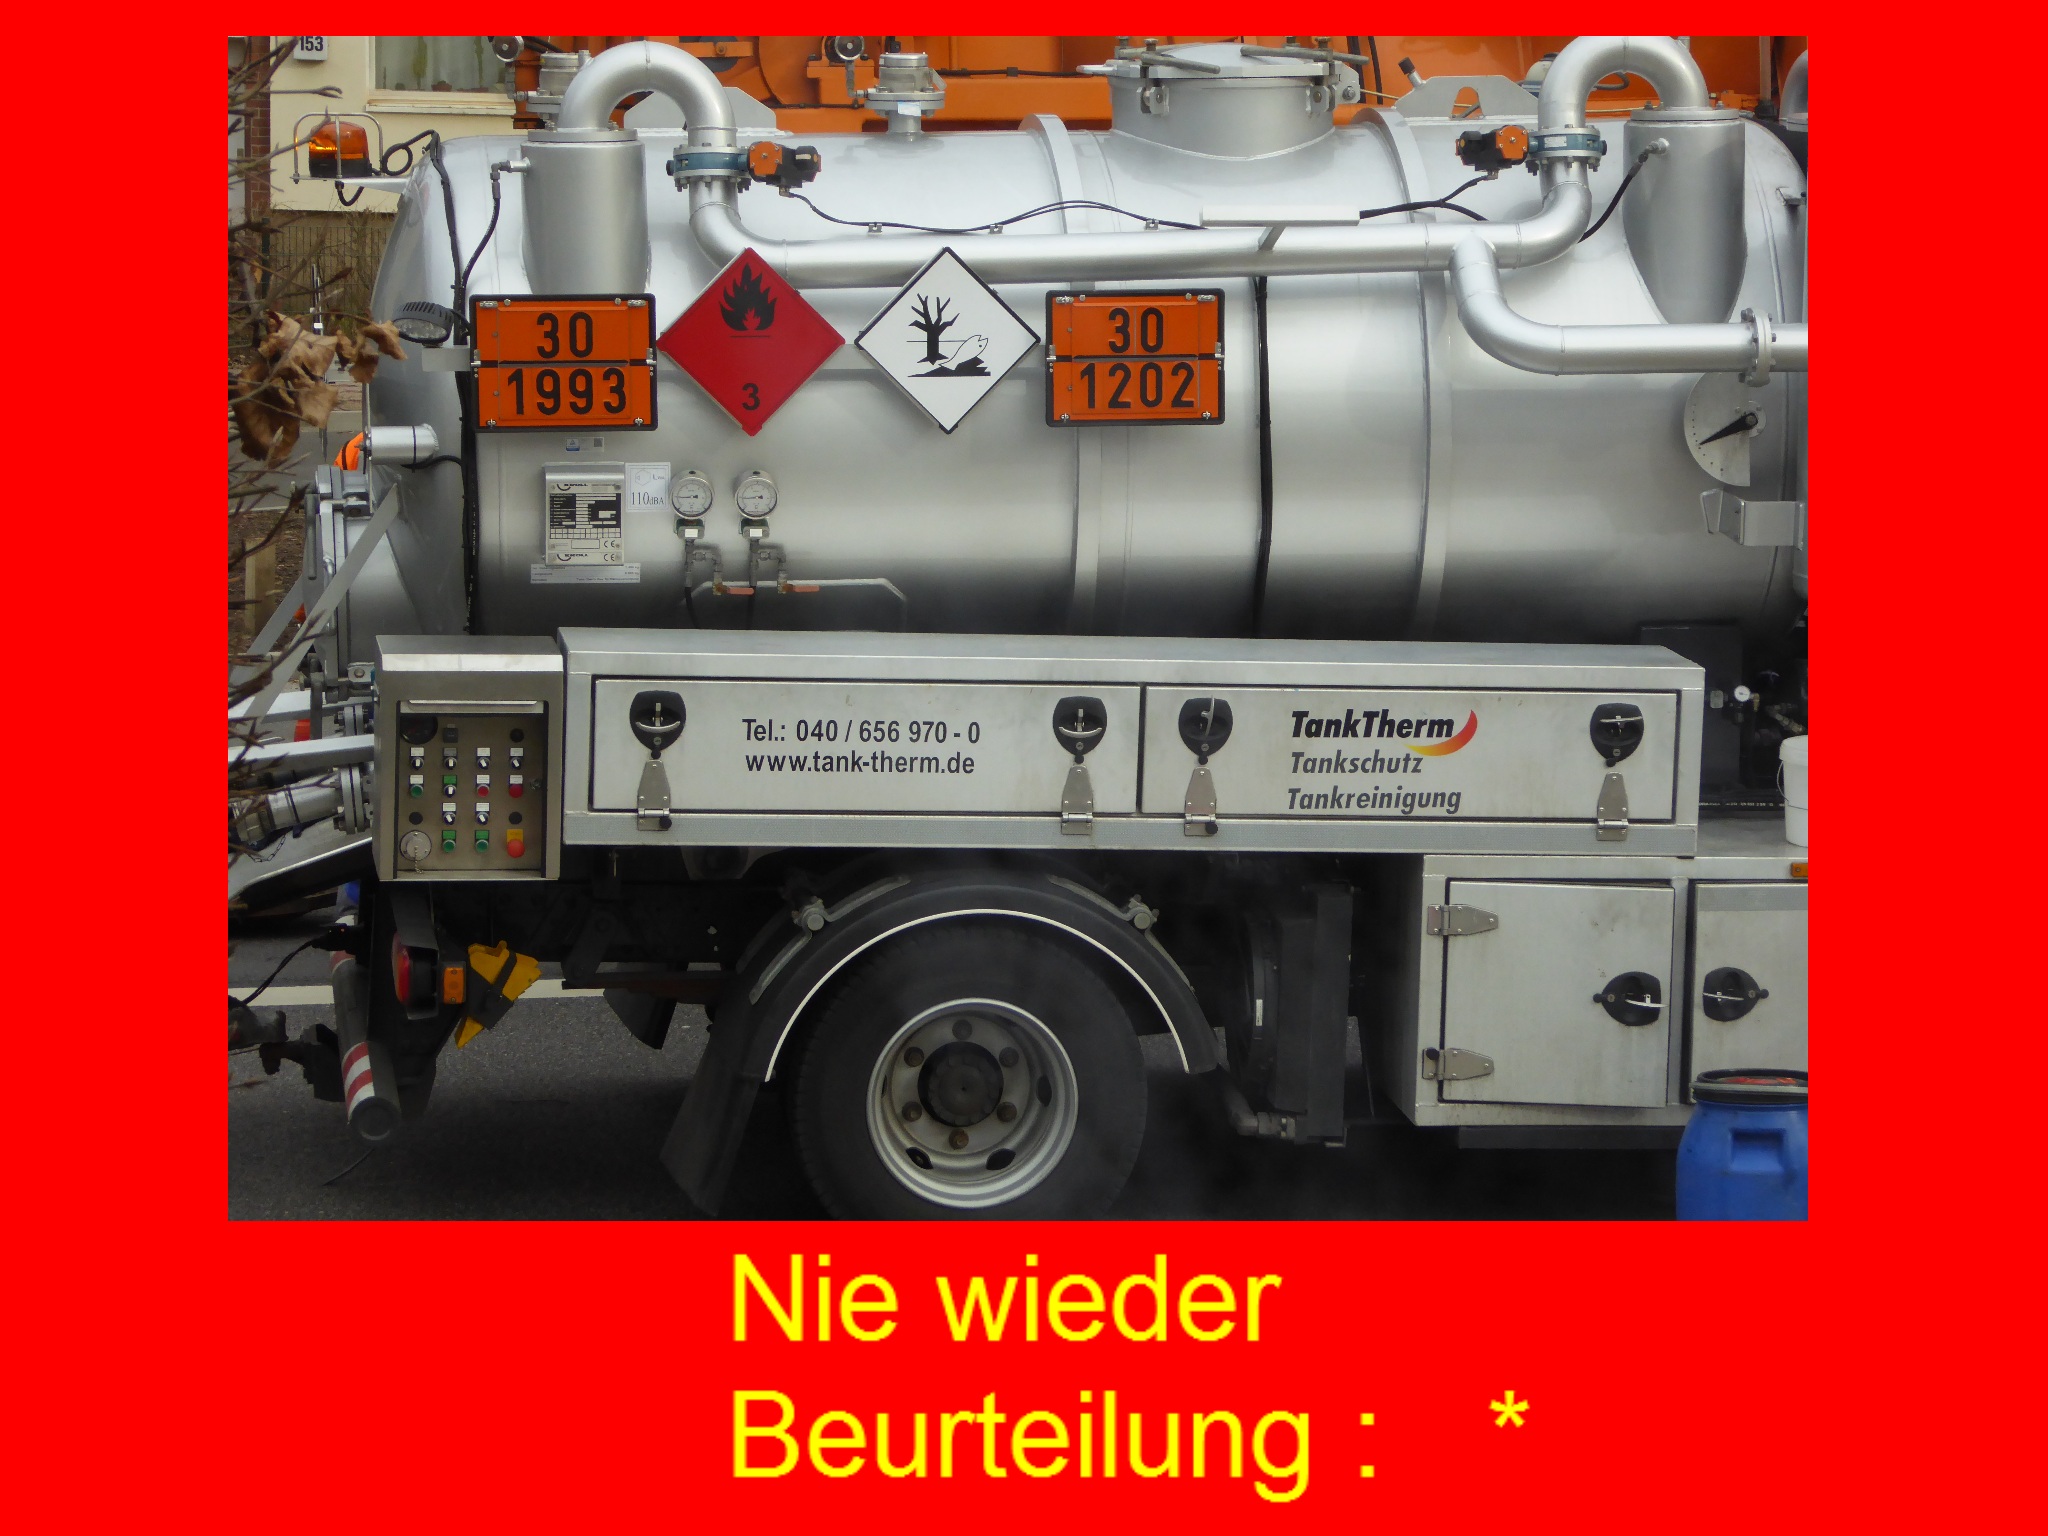 Bild 1 Tank-Therm GmbH & Co. KG in Hamburg